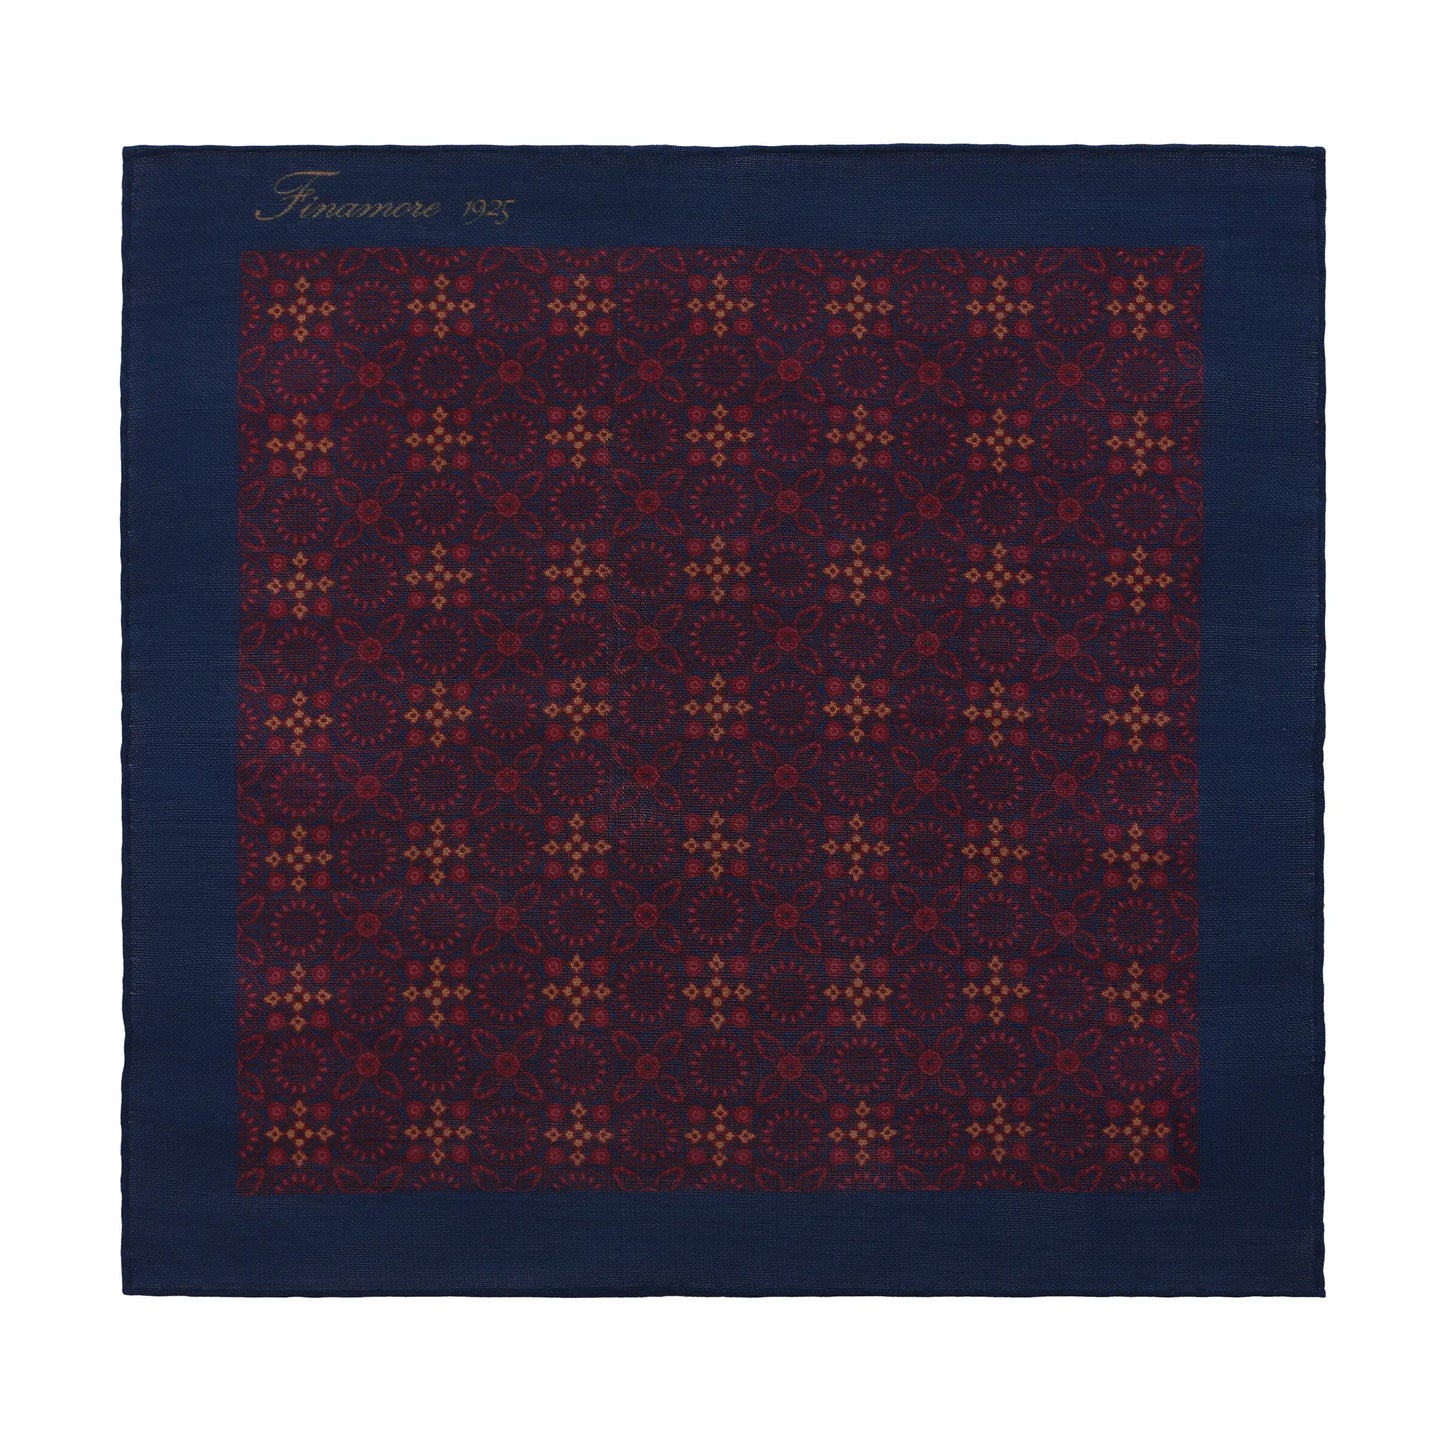 Printed Wool-Blend Pocket Square in Burgundy